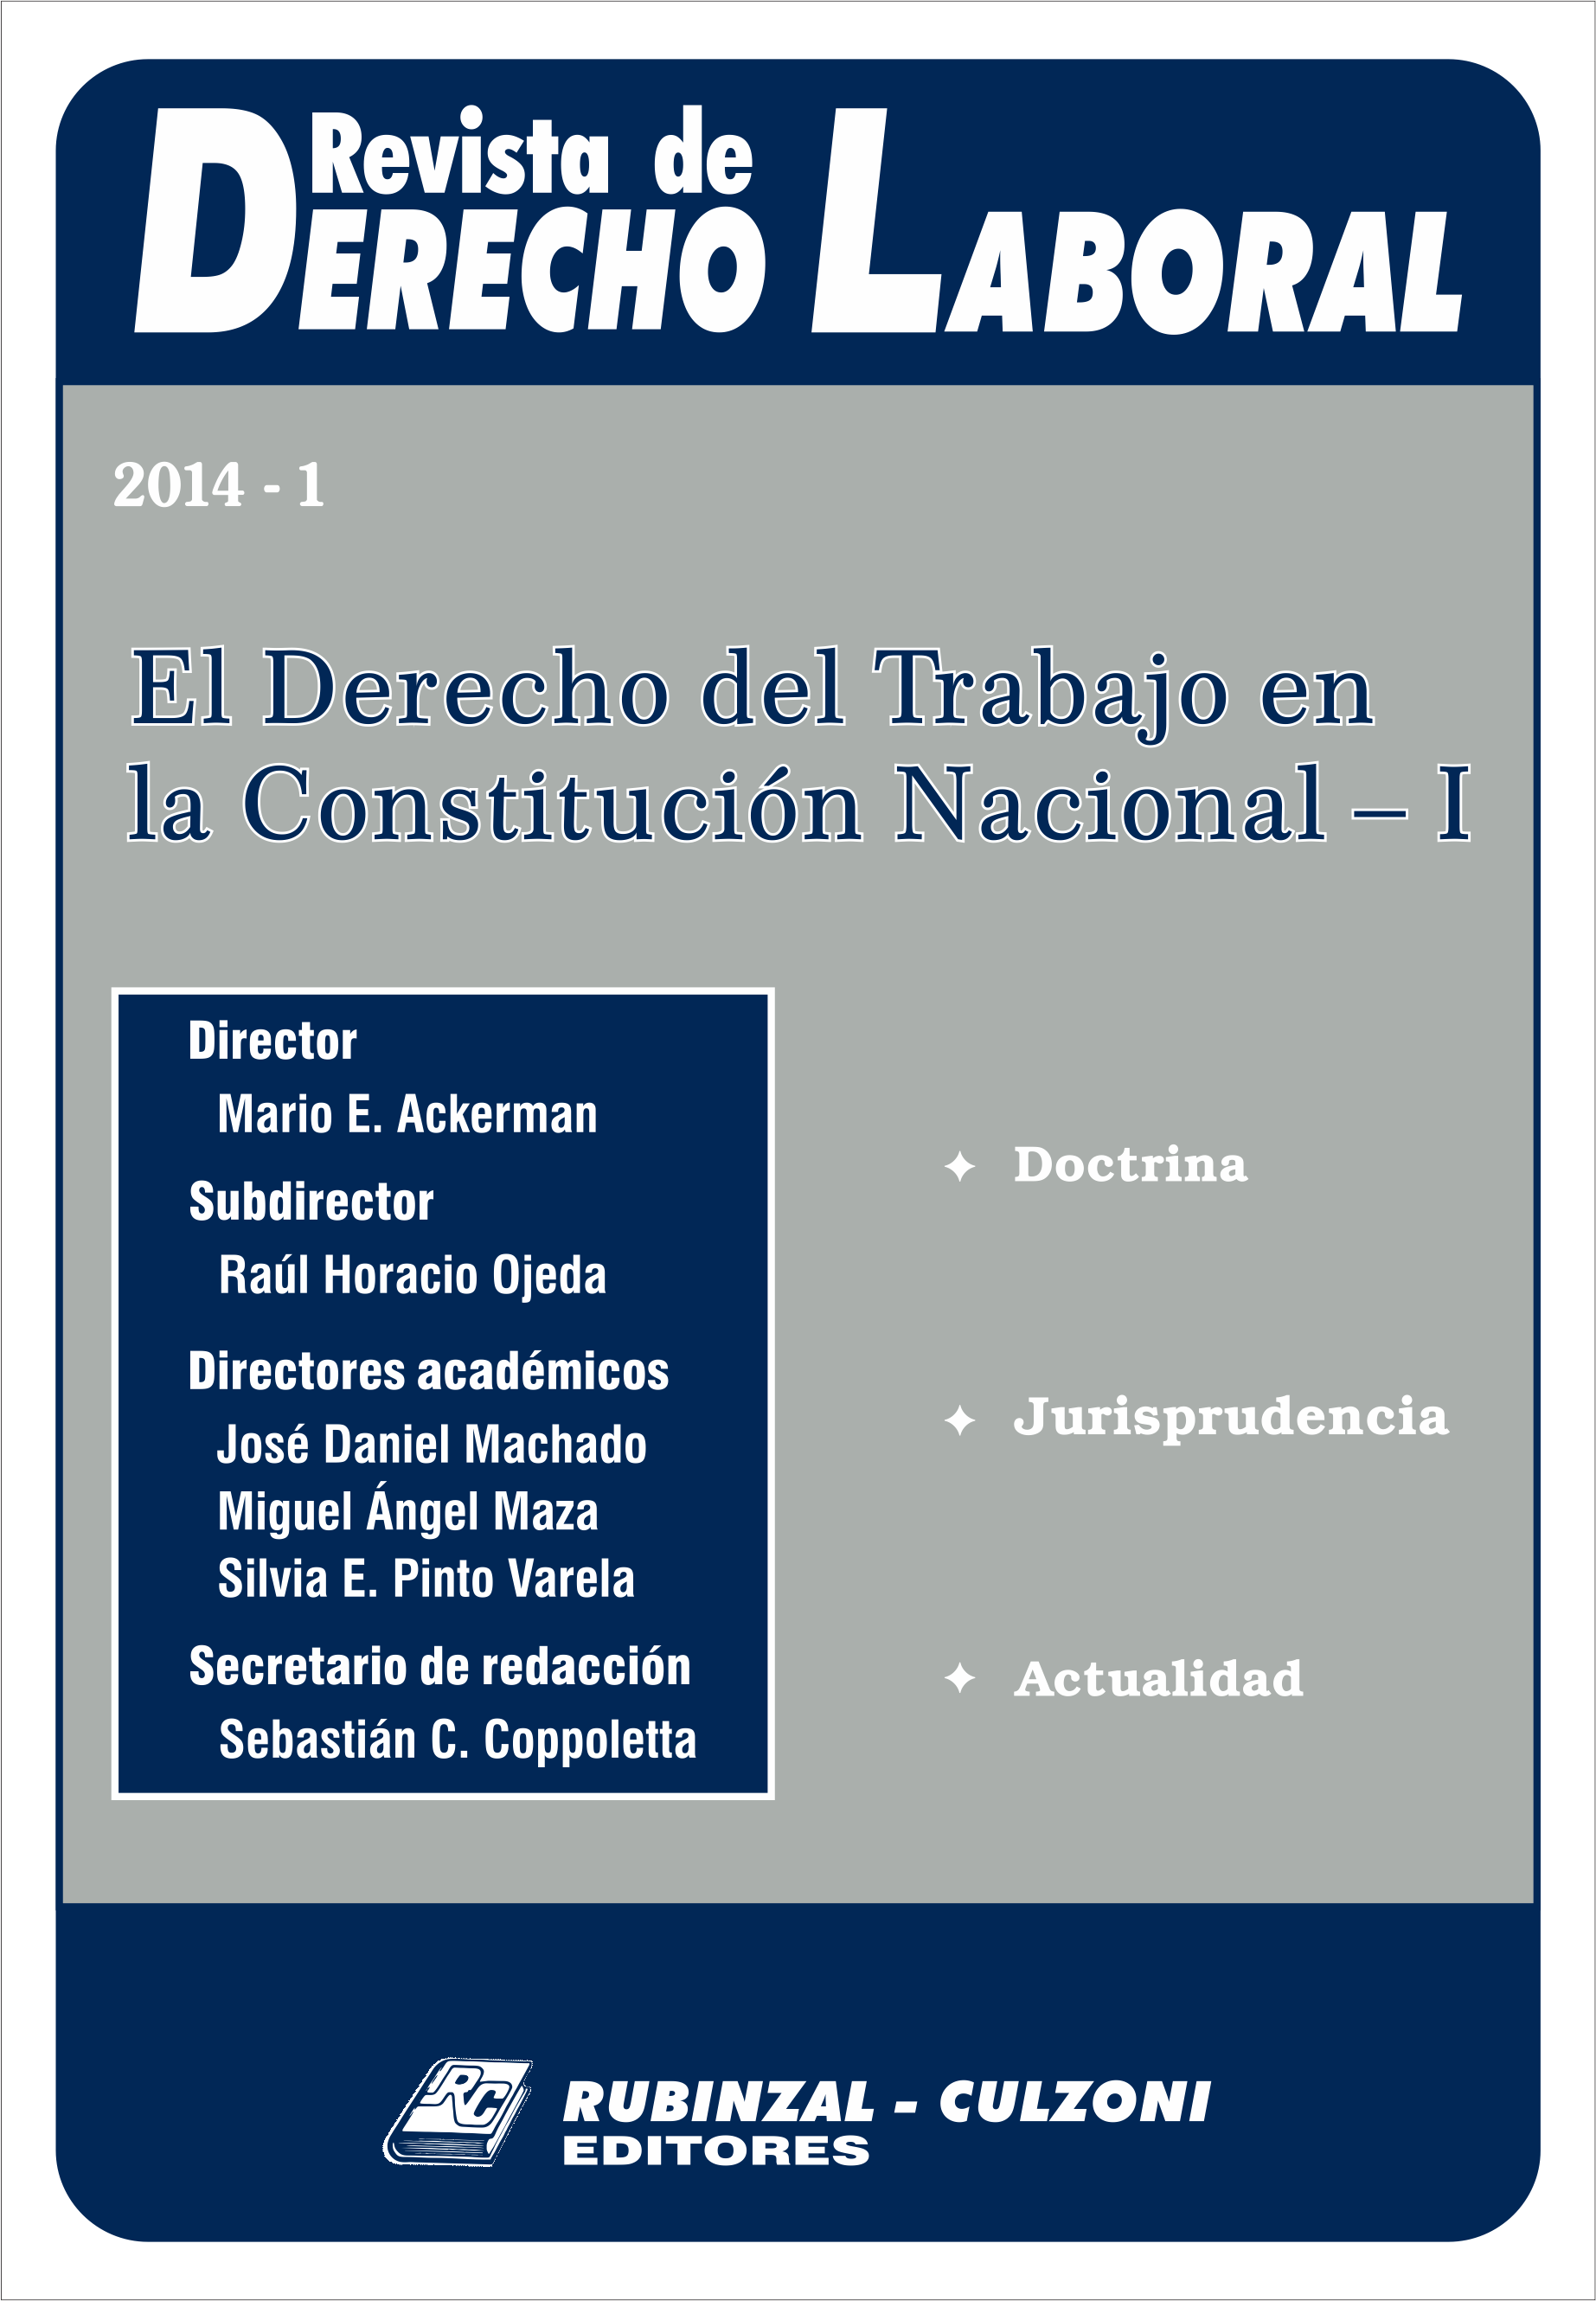  - El Derecho del Trabajo en la Constitución Nacional - I. [2014-1]